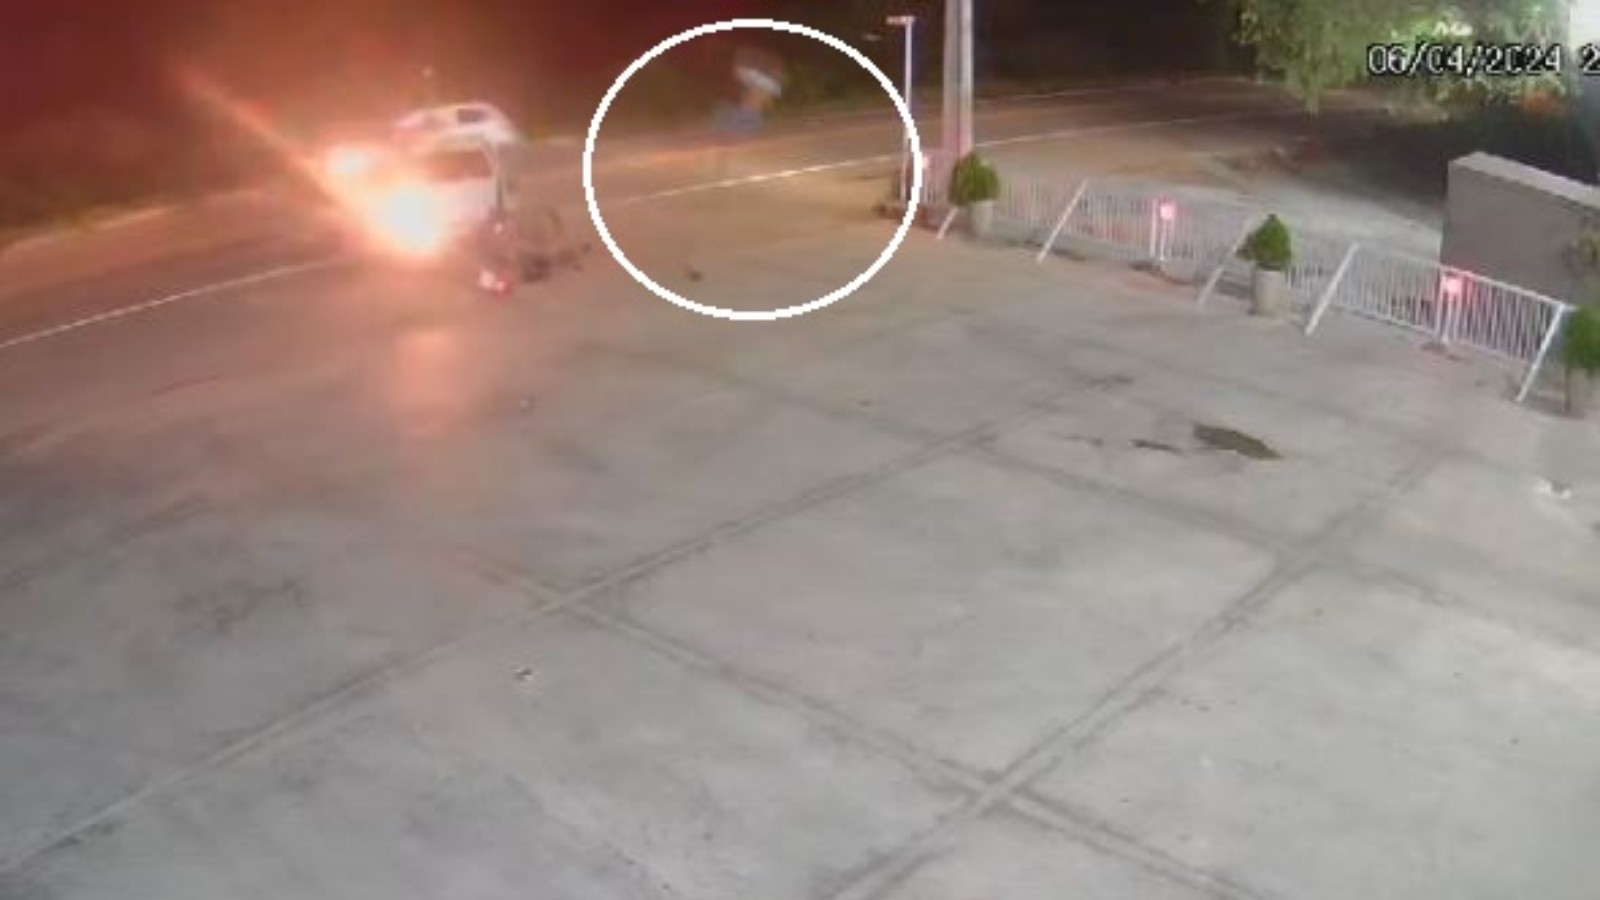 Motociclista voa por cima de carro durante batida em rodovia no Ceará; vídeo